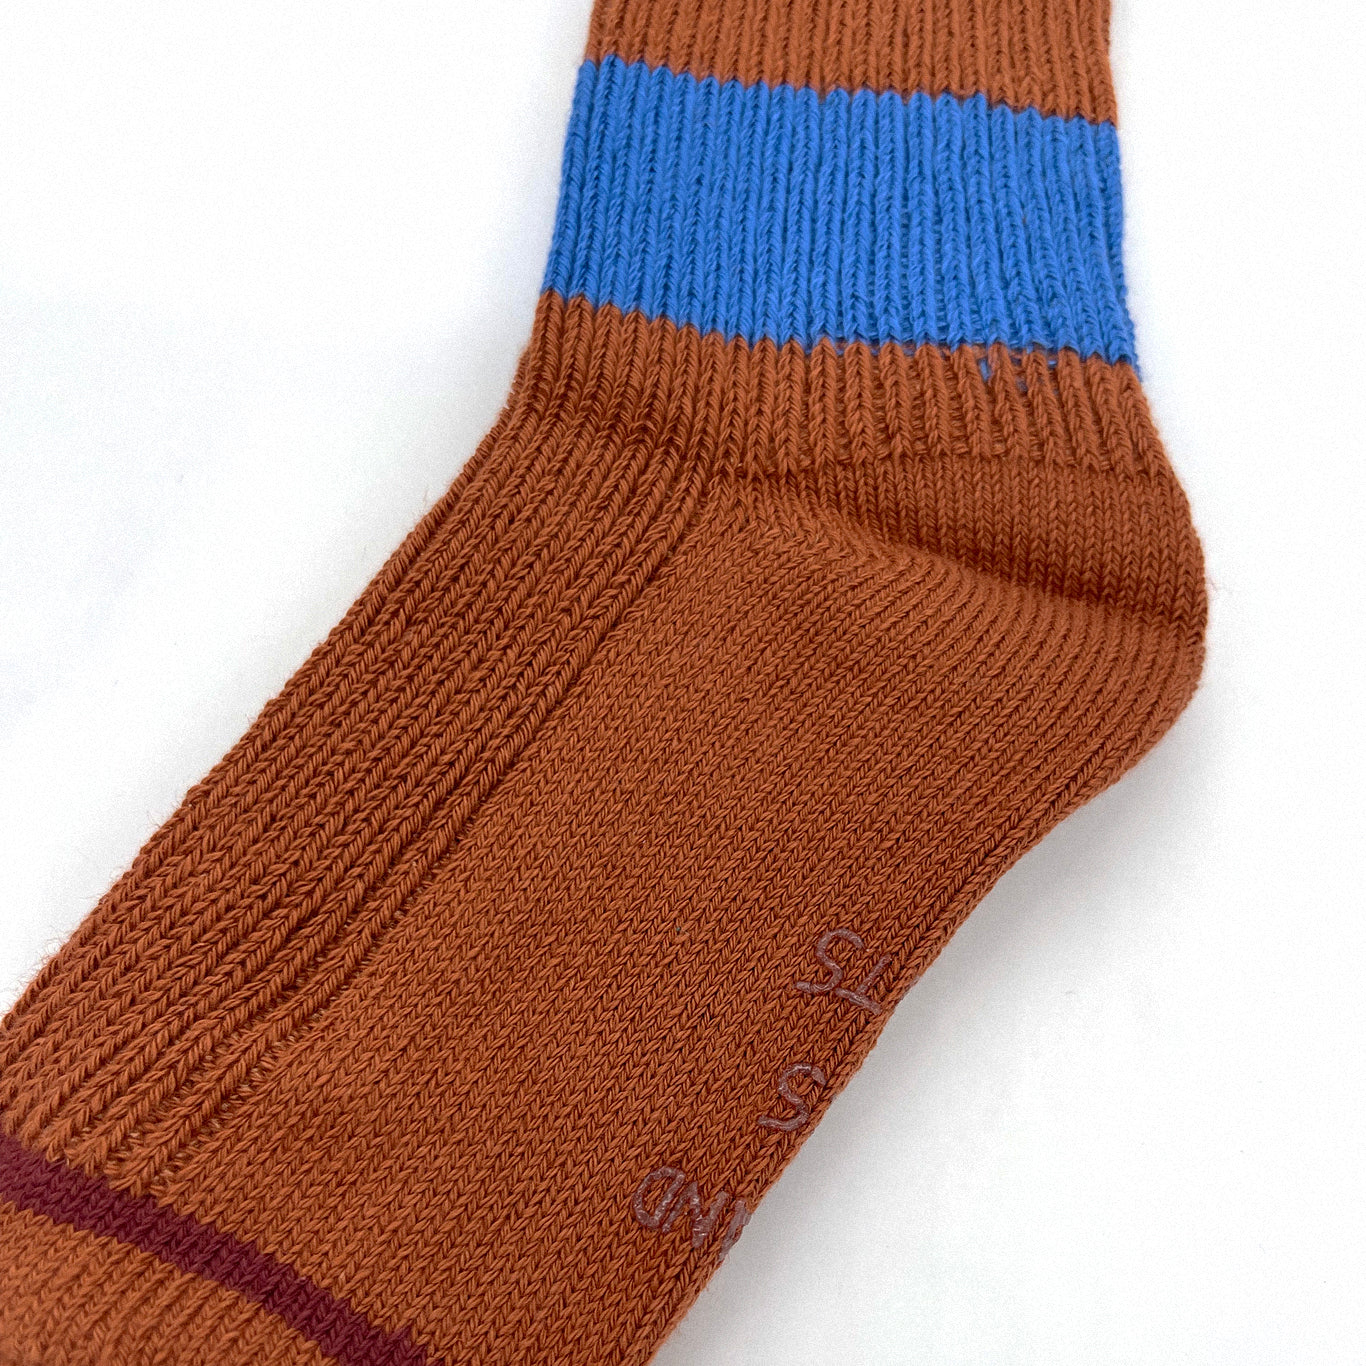 Color Block Sock Set